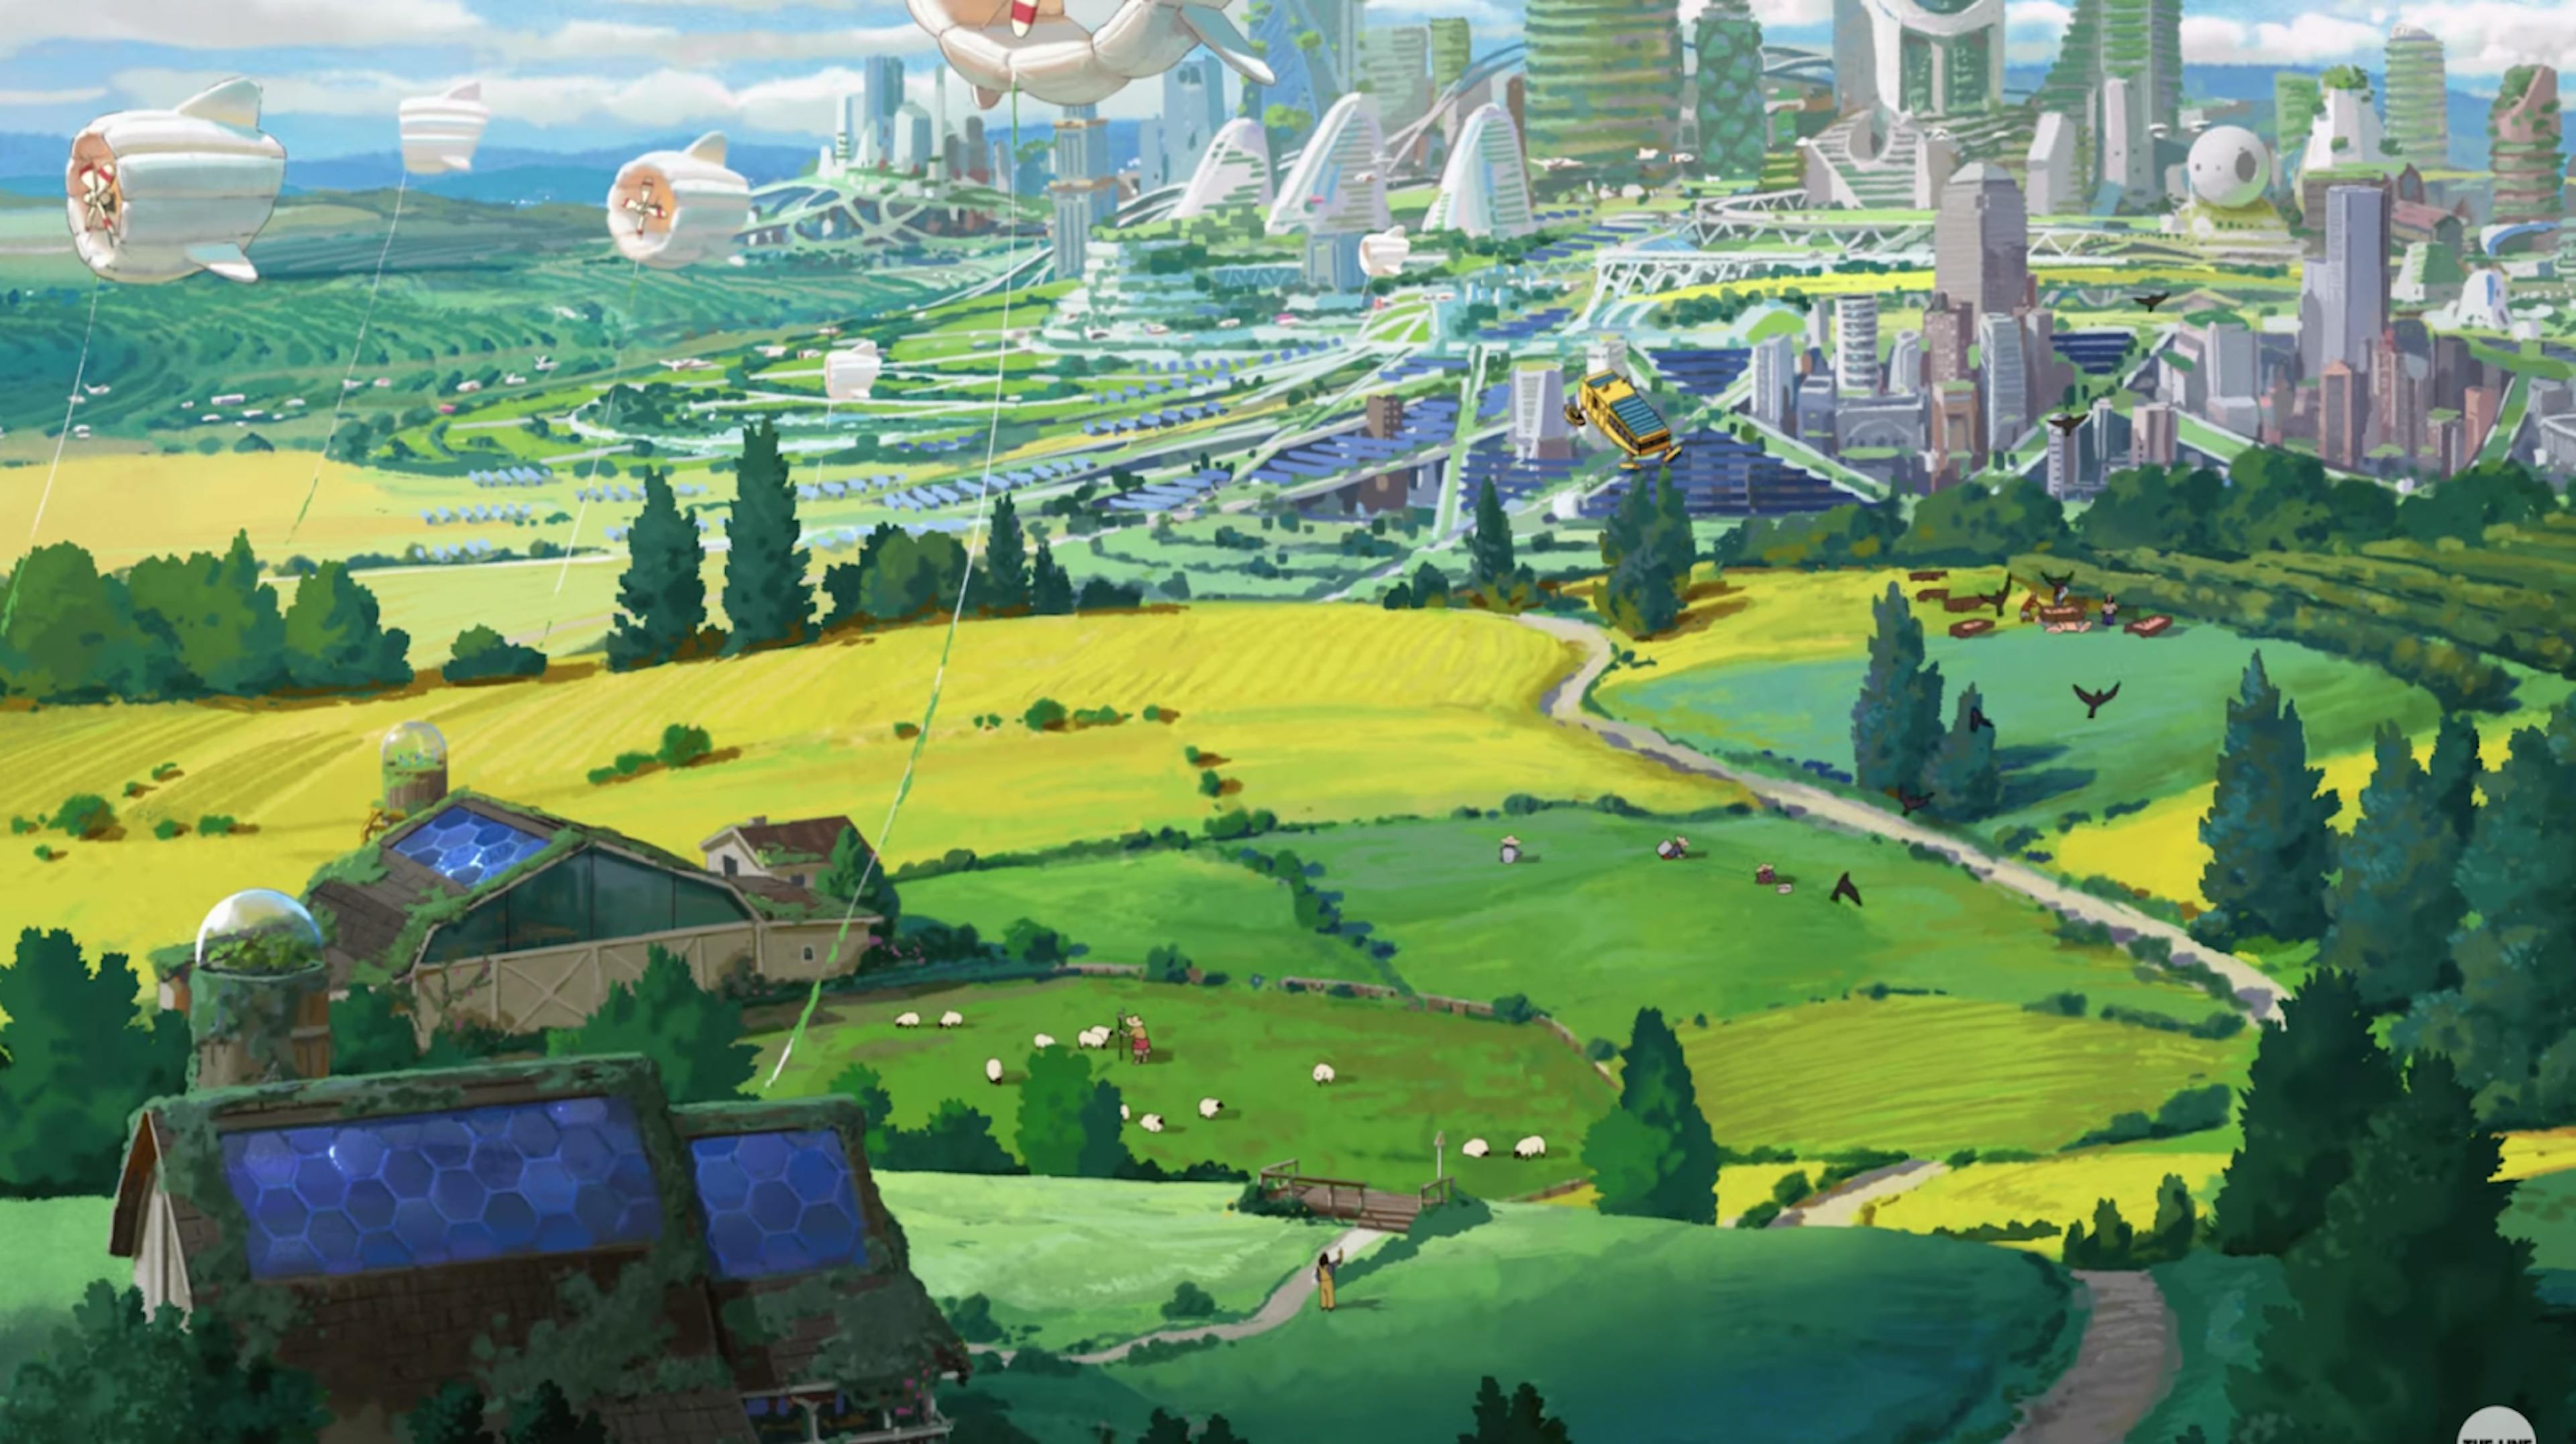 The Line'ın Chobani anime reklamı Dear Alice'ten bir kare; Solarpunk geleceği ve bir Ghibli bestecisinden bir müzik içeren. https://www.youtube.com/watch?v=z-Ng5ZvrDm4 adresinde mevcuttur.